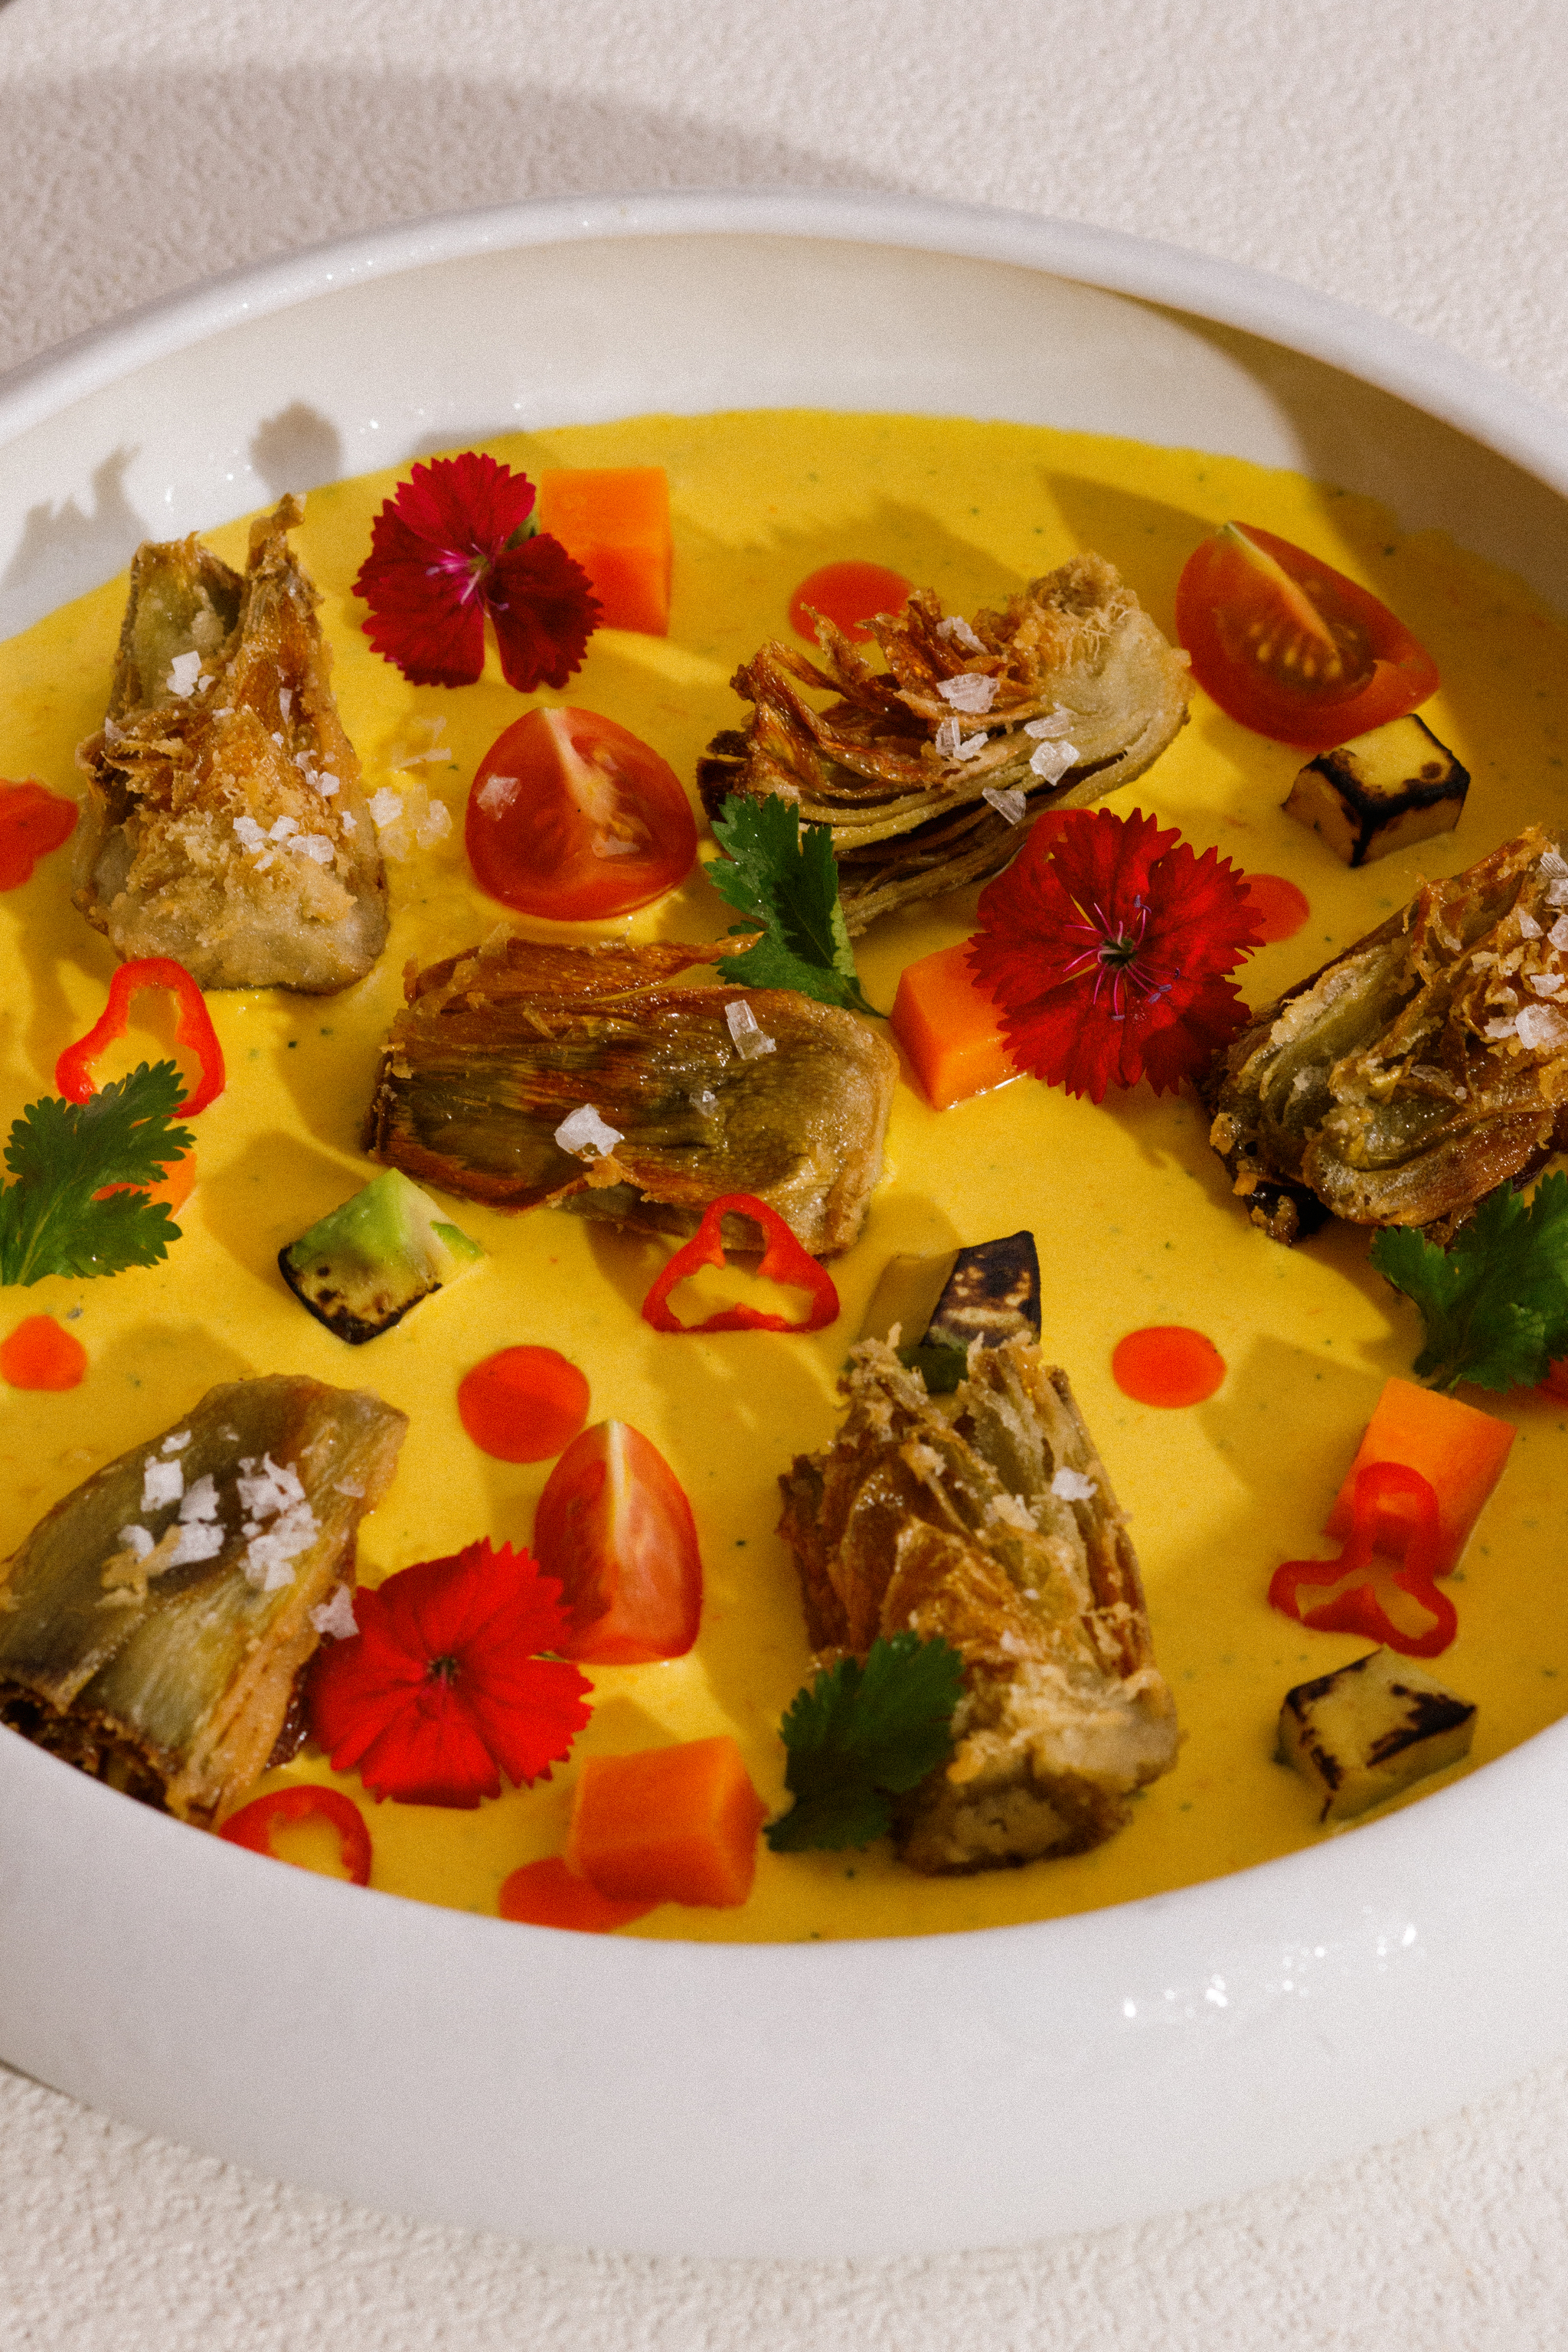 Todos los platos tienen una cuidada presentación como este Tiradito de alcachofa confitada.